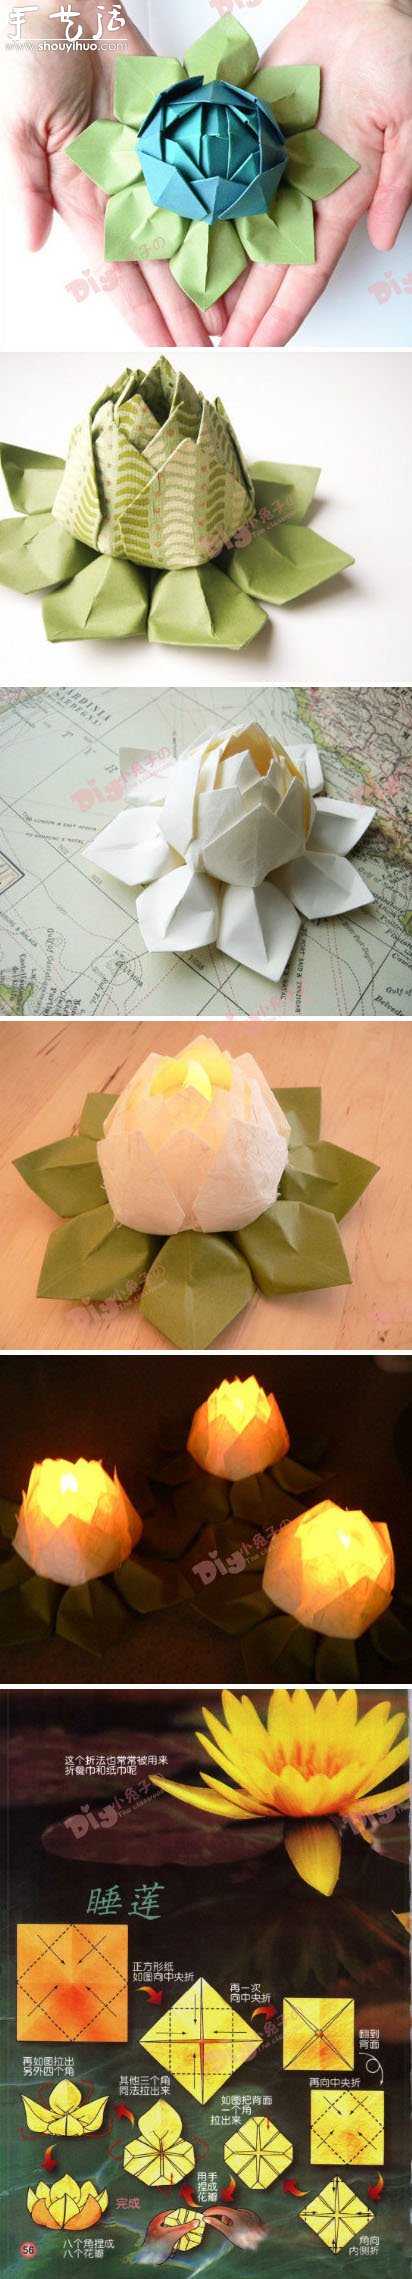 折纸睡莲的手工制作方法